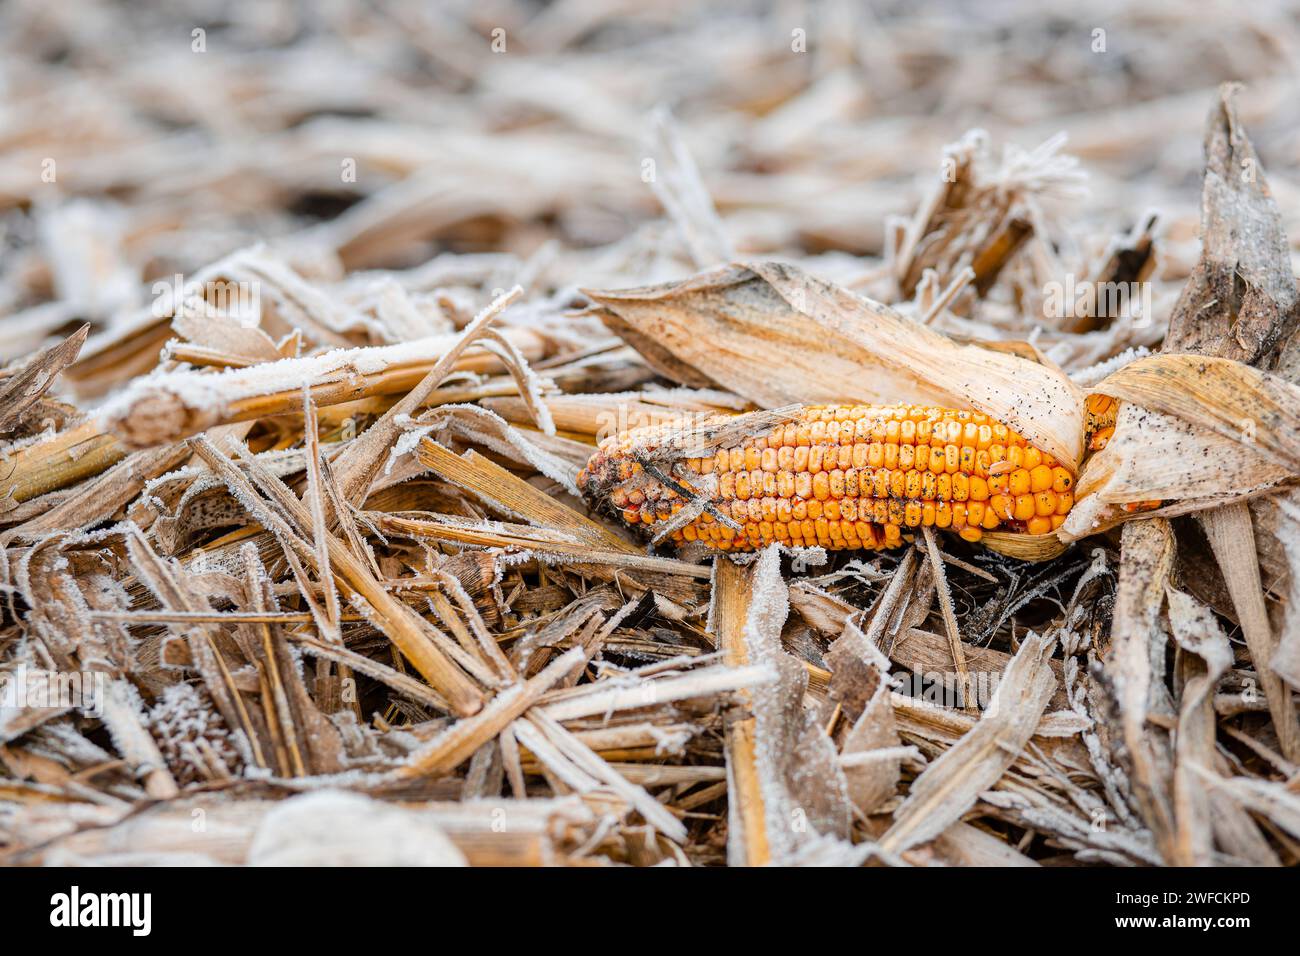 Le champ de maïs est couvert de couverture de neige avec les restes d'épis de maïs. Concept de récolte perdue. Gros plan de la scène de champ. Banque D'Images